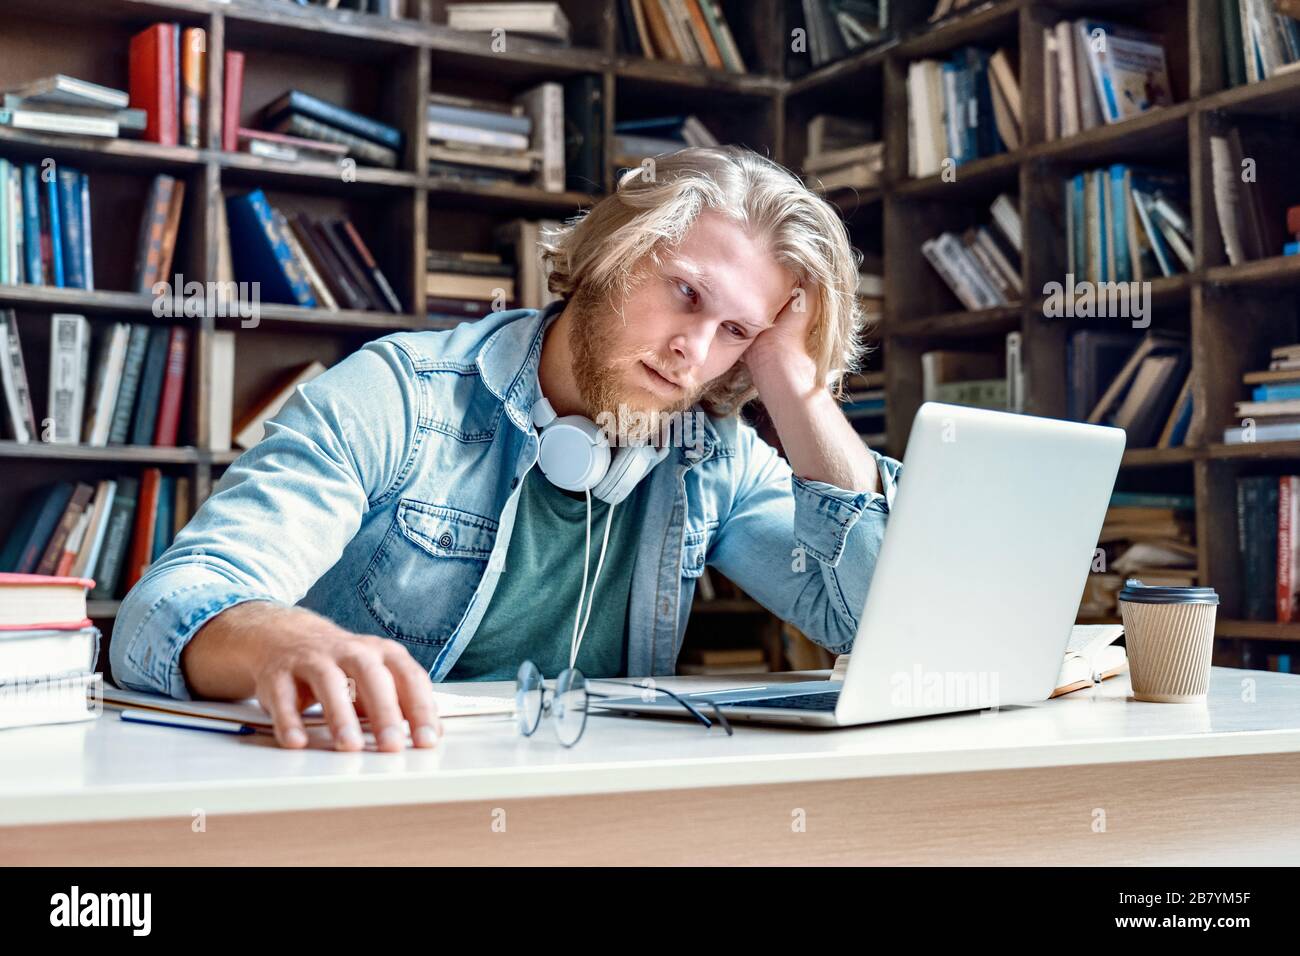 Infeliz aburrido estudiante masculino estudiando mirando el portátil. Foto de stock